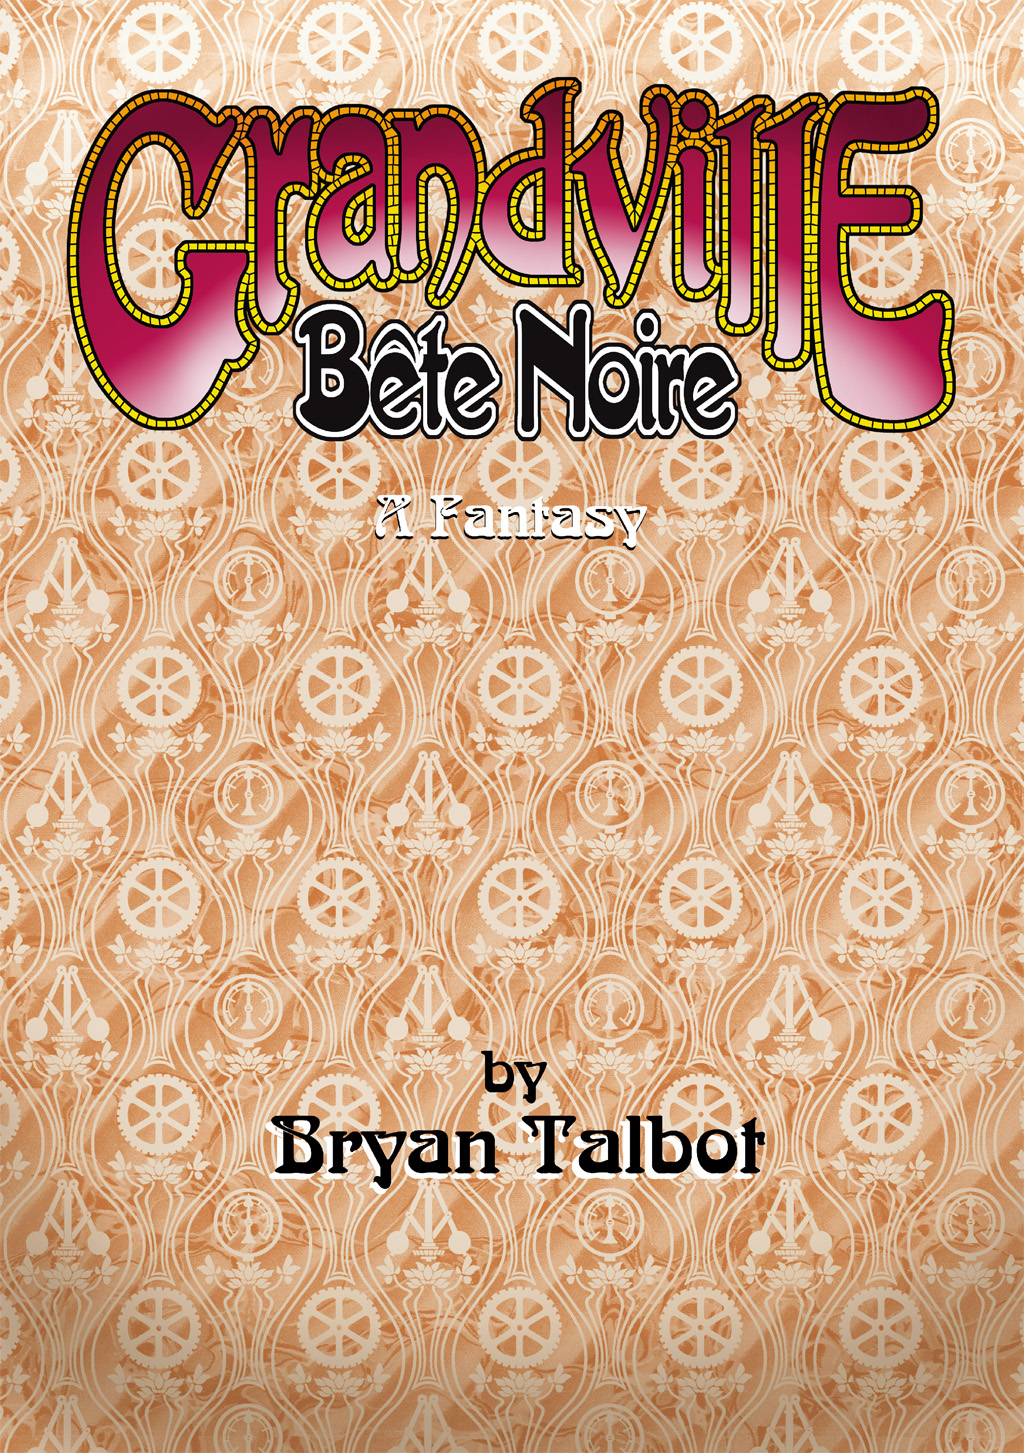 Read online Grandville Bête Noire comic -  Issue # TPB - 12